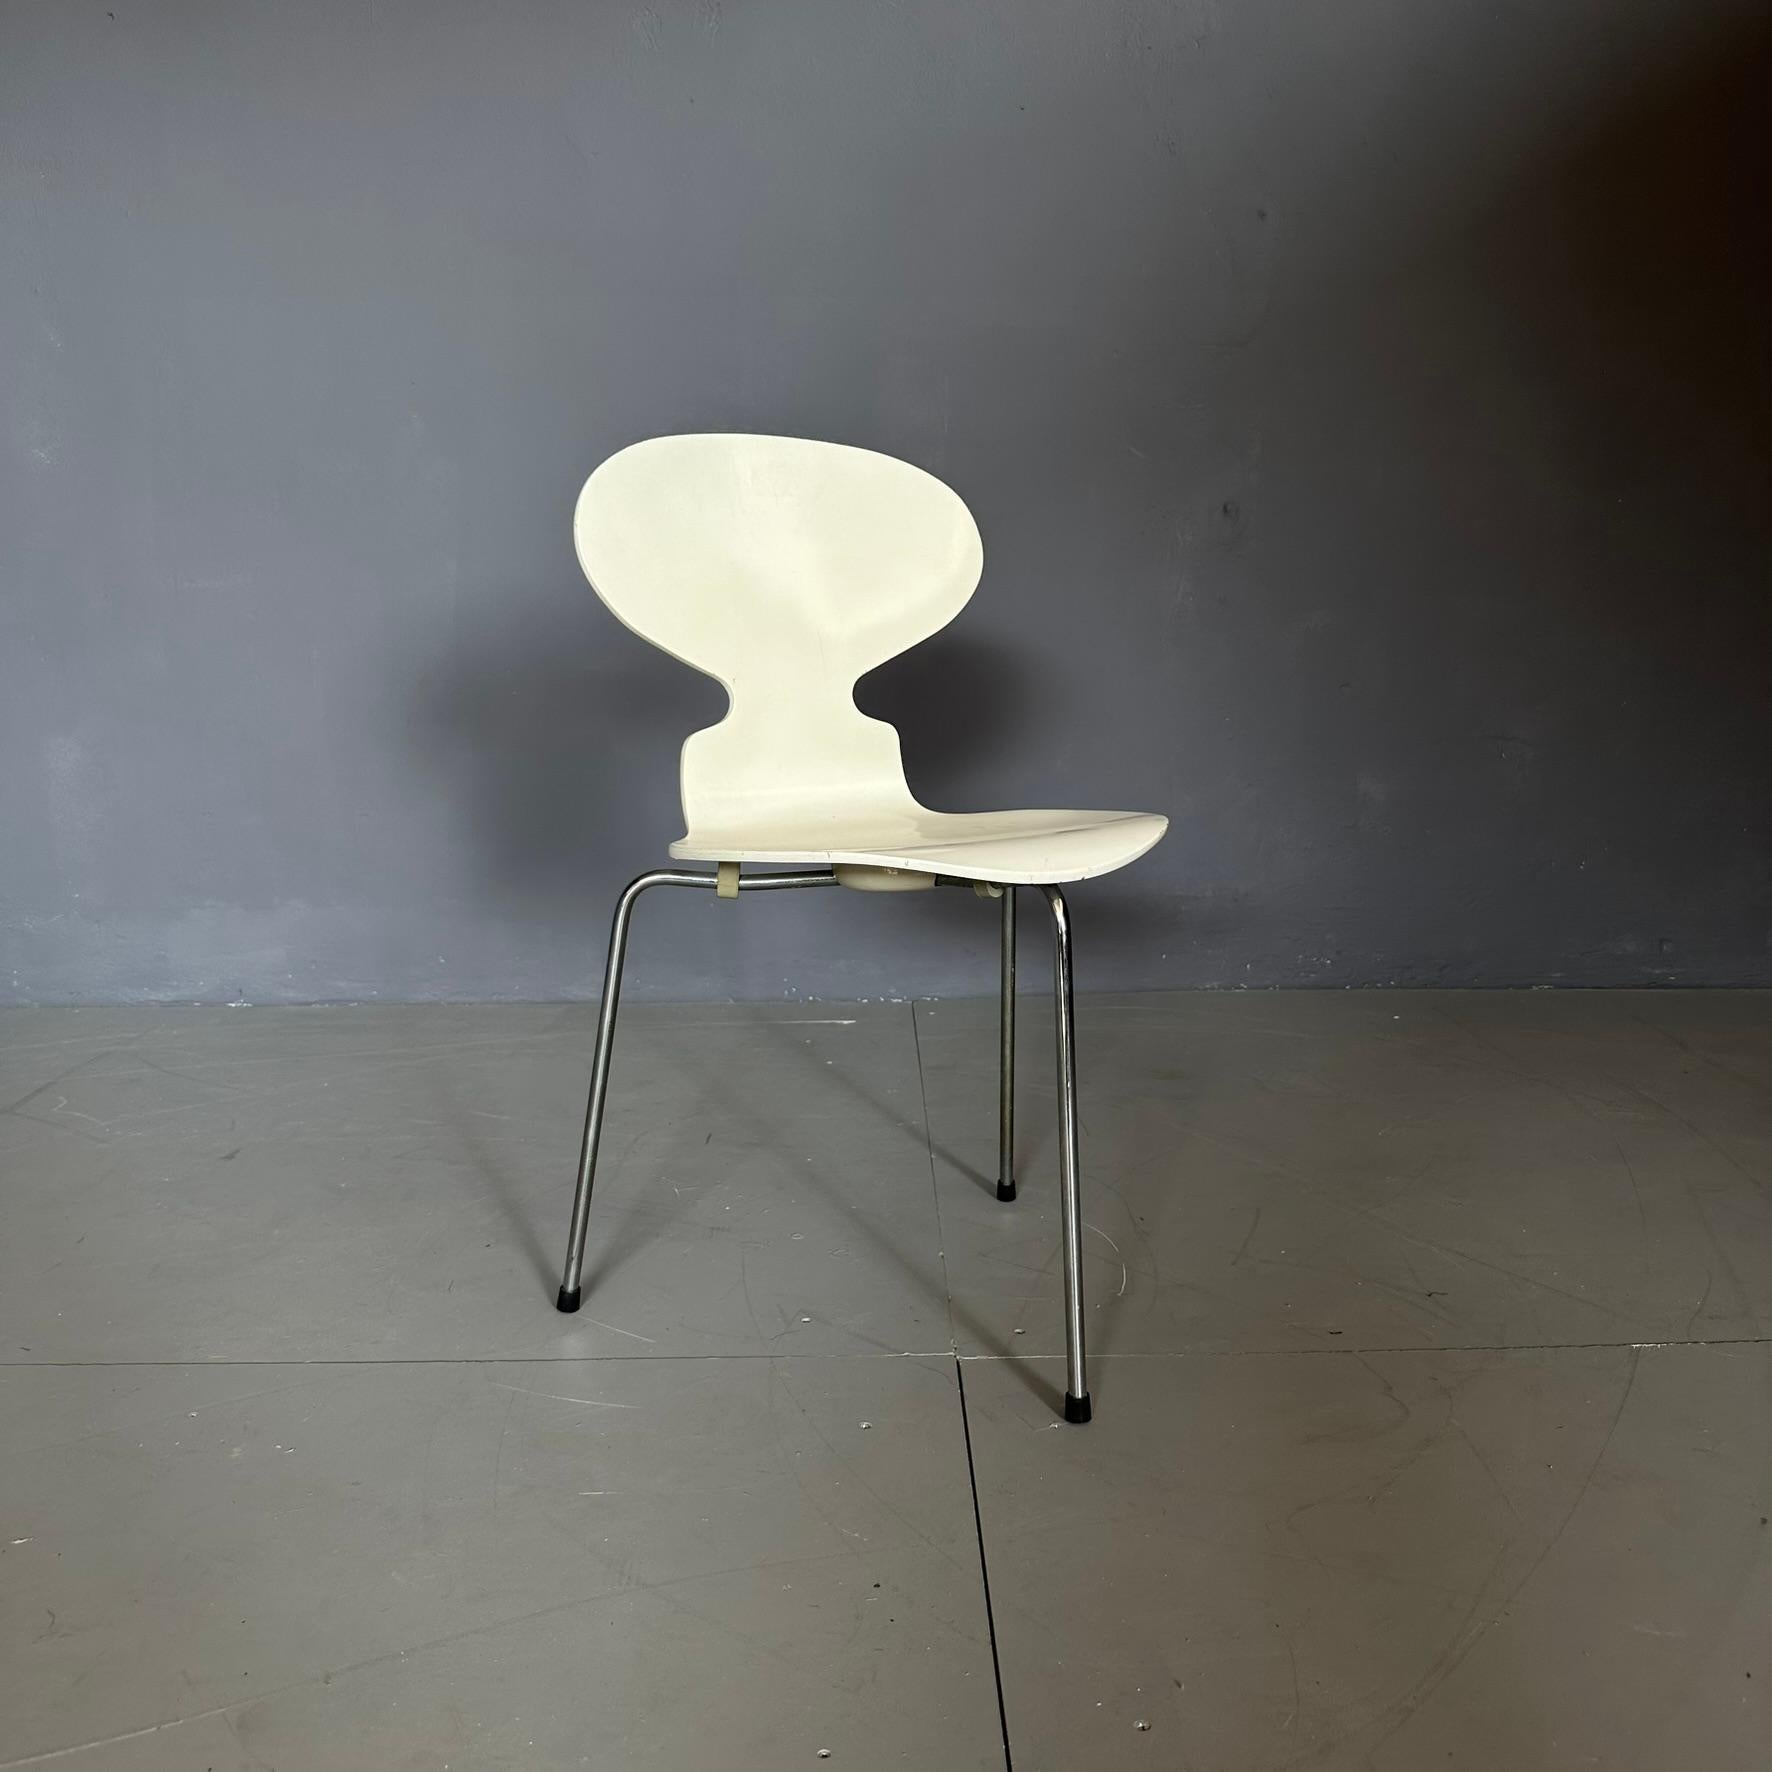 ANT 3100 Stuhl, Entwurf von Jacobsen Hansen für Fritz, schwedische Herstellung.
Der Stuhl ist aus weißem, gebogenem Holz mit drei Metallbeinen gefertigt.
Die Krümmung des Holzes unterstreicht die Schönheit und Besonderheit dieses Modells.
Das